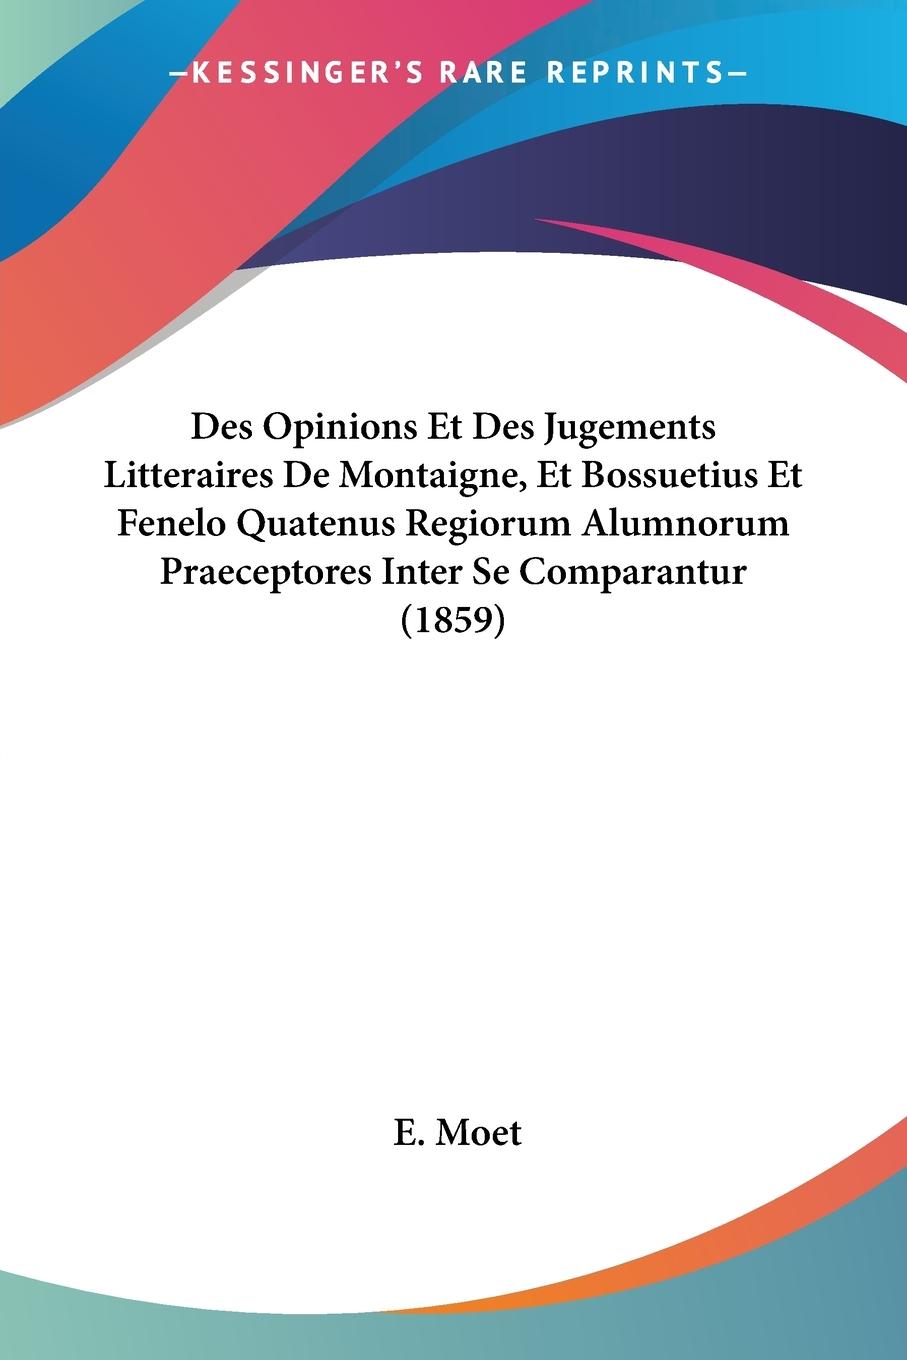 Des Opinions Et Des Jugements Litteraires De Montaigne, Et Bossuetius Et Fenelo Quatenus Regiorum Alumnorum Praeceptores Inter Se Comparantur (1859) - Moet, E.